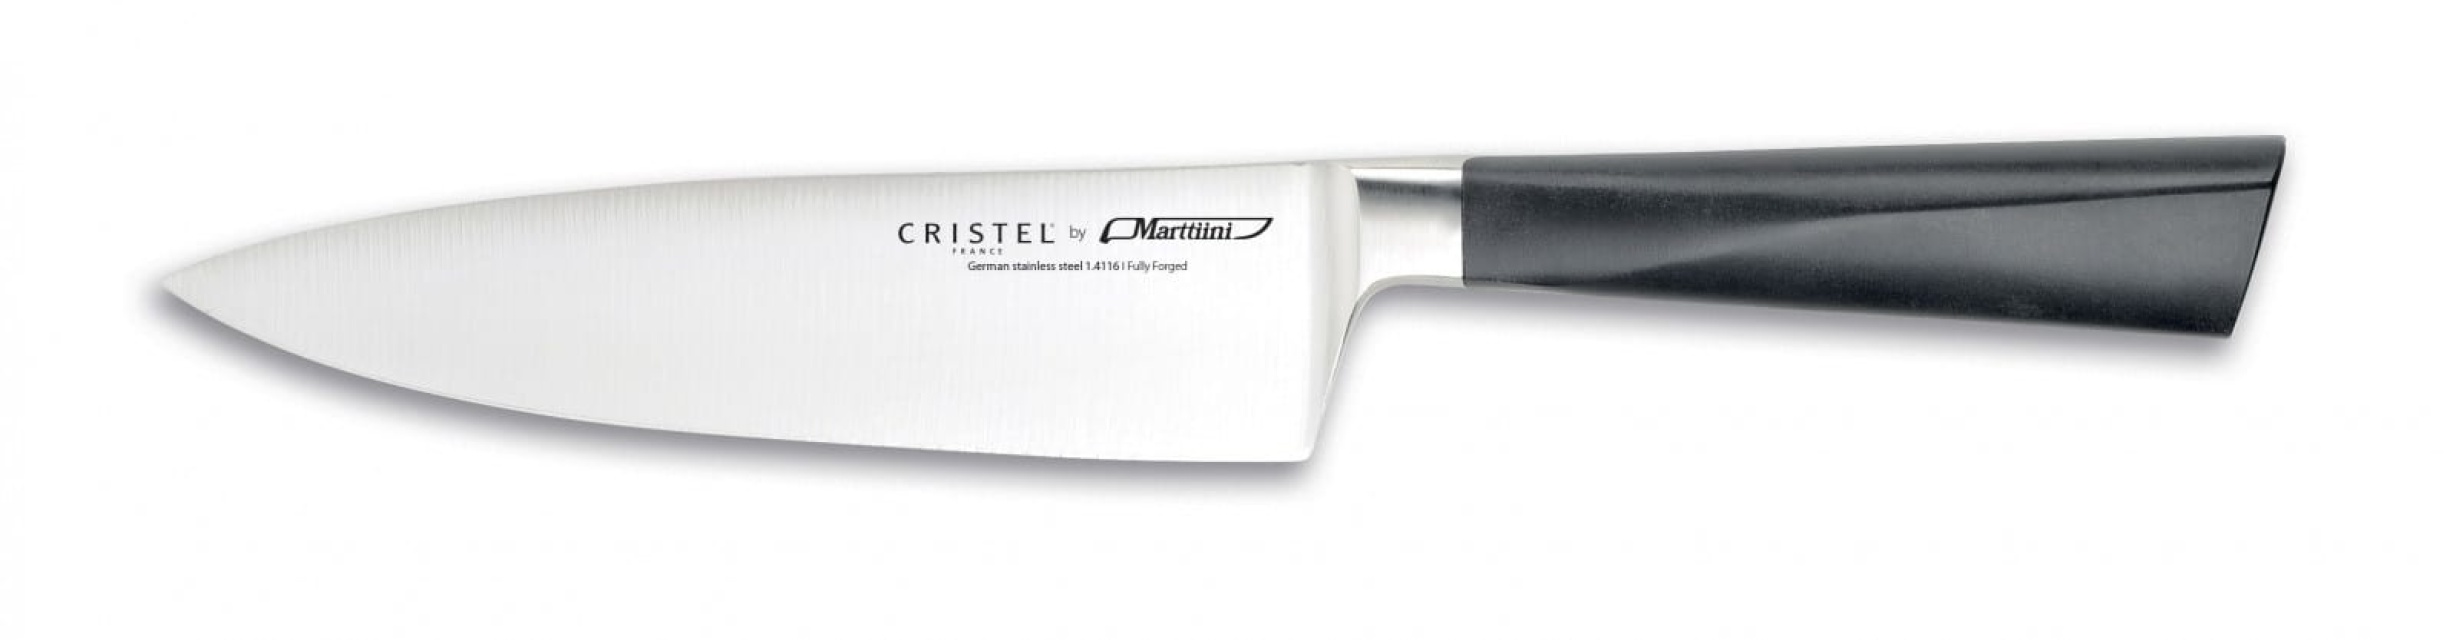 Nóż szefa kuchni, 21 cm - Cristel